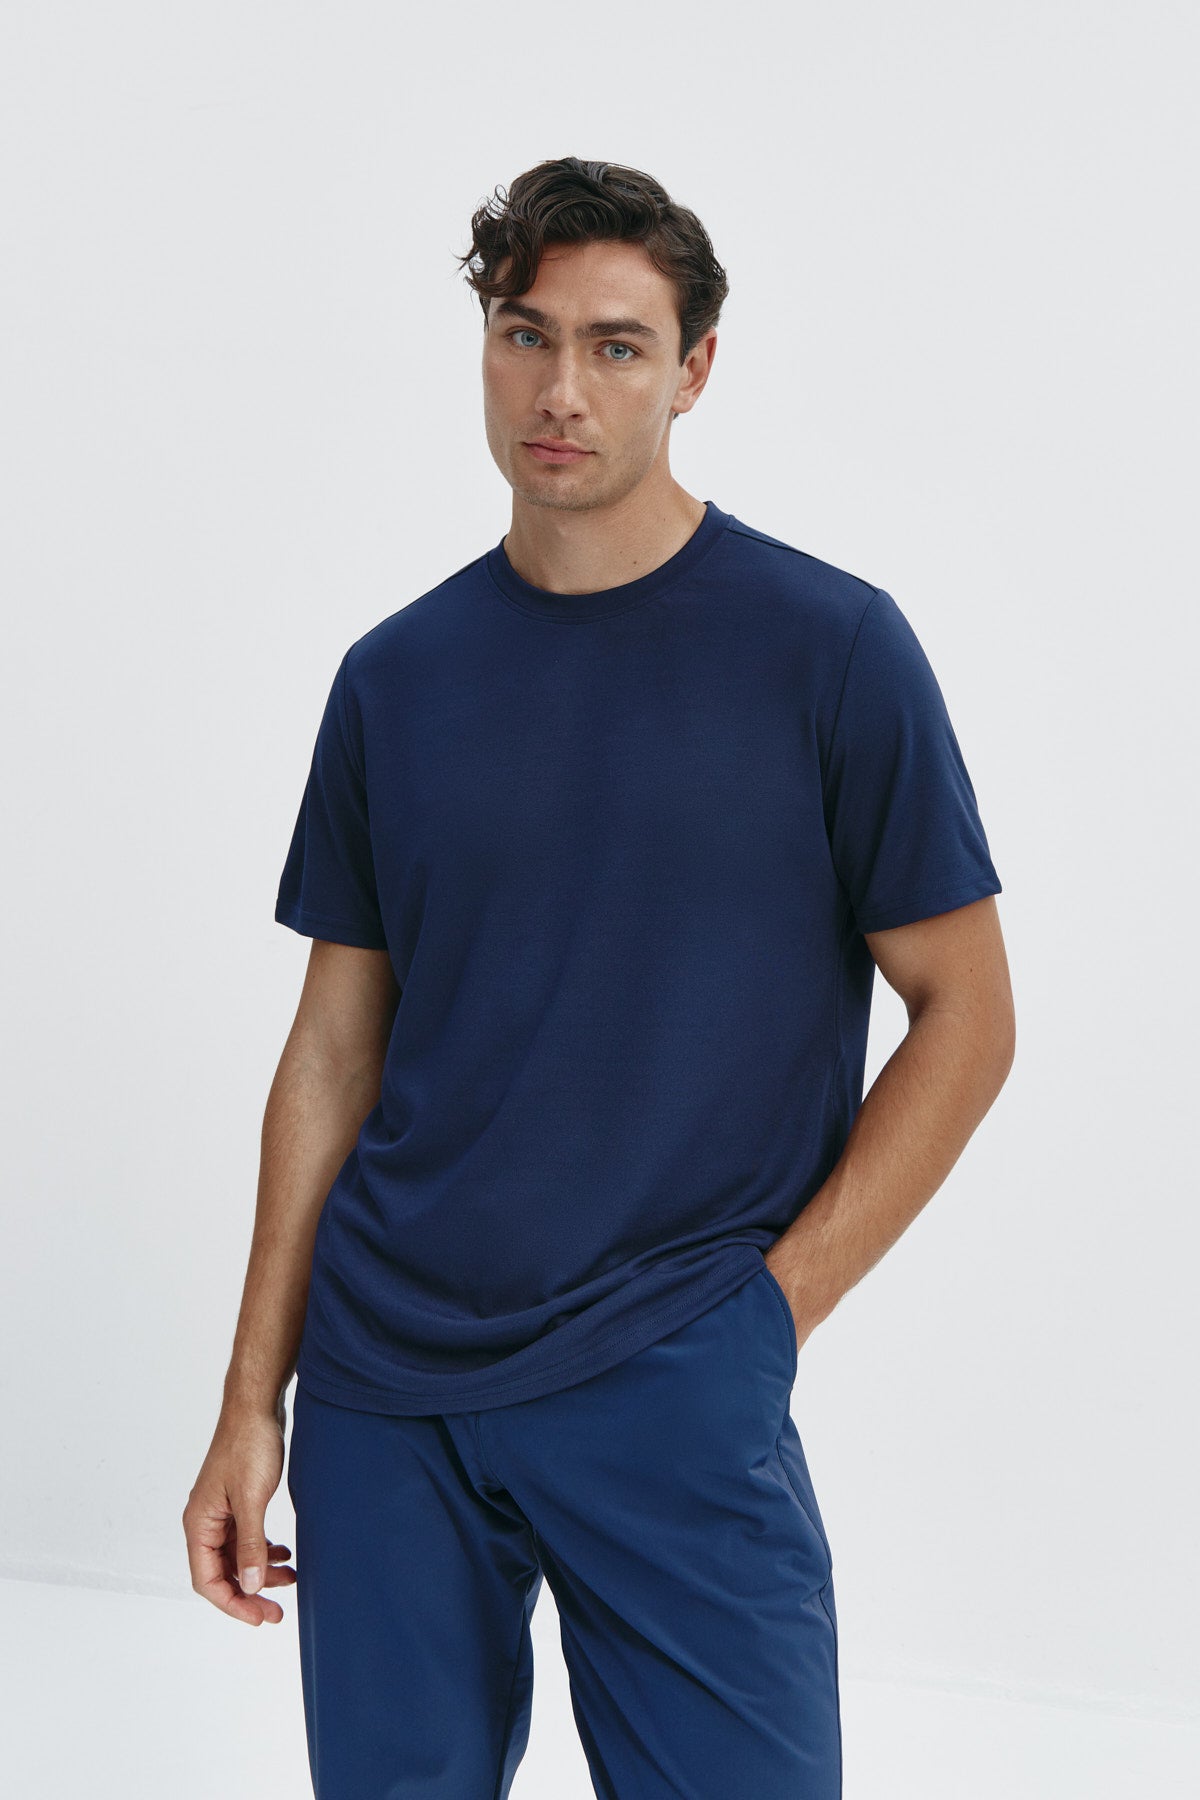 Camiseta de hombre azul zafiro: Camiseta de hombre azul zafiro de manga corta, antiarrugas y antimanchas. Foto frente,